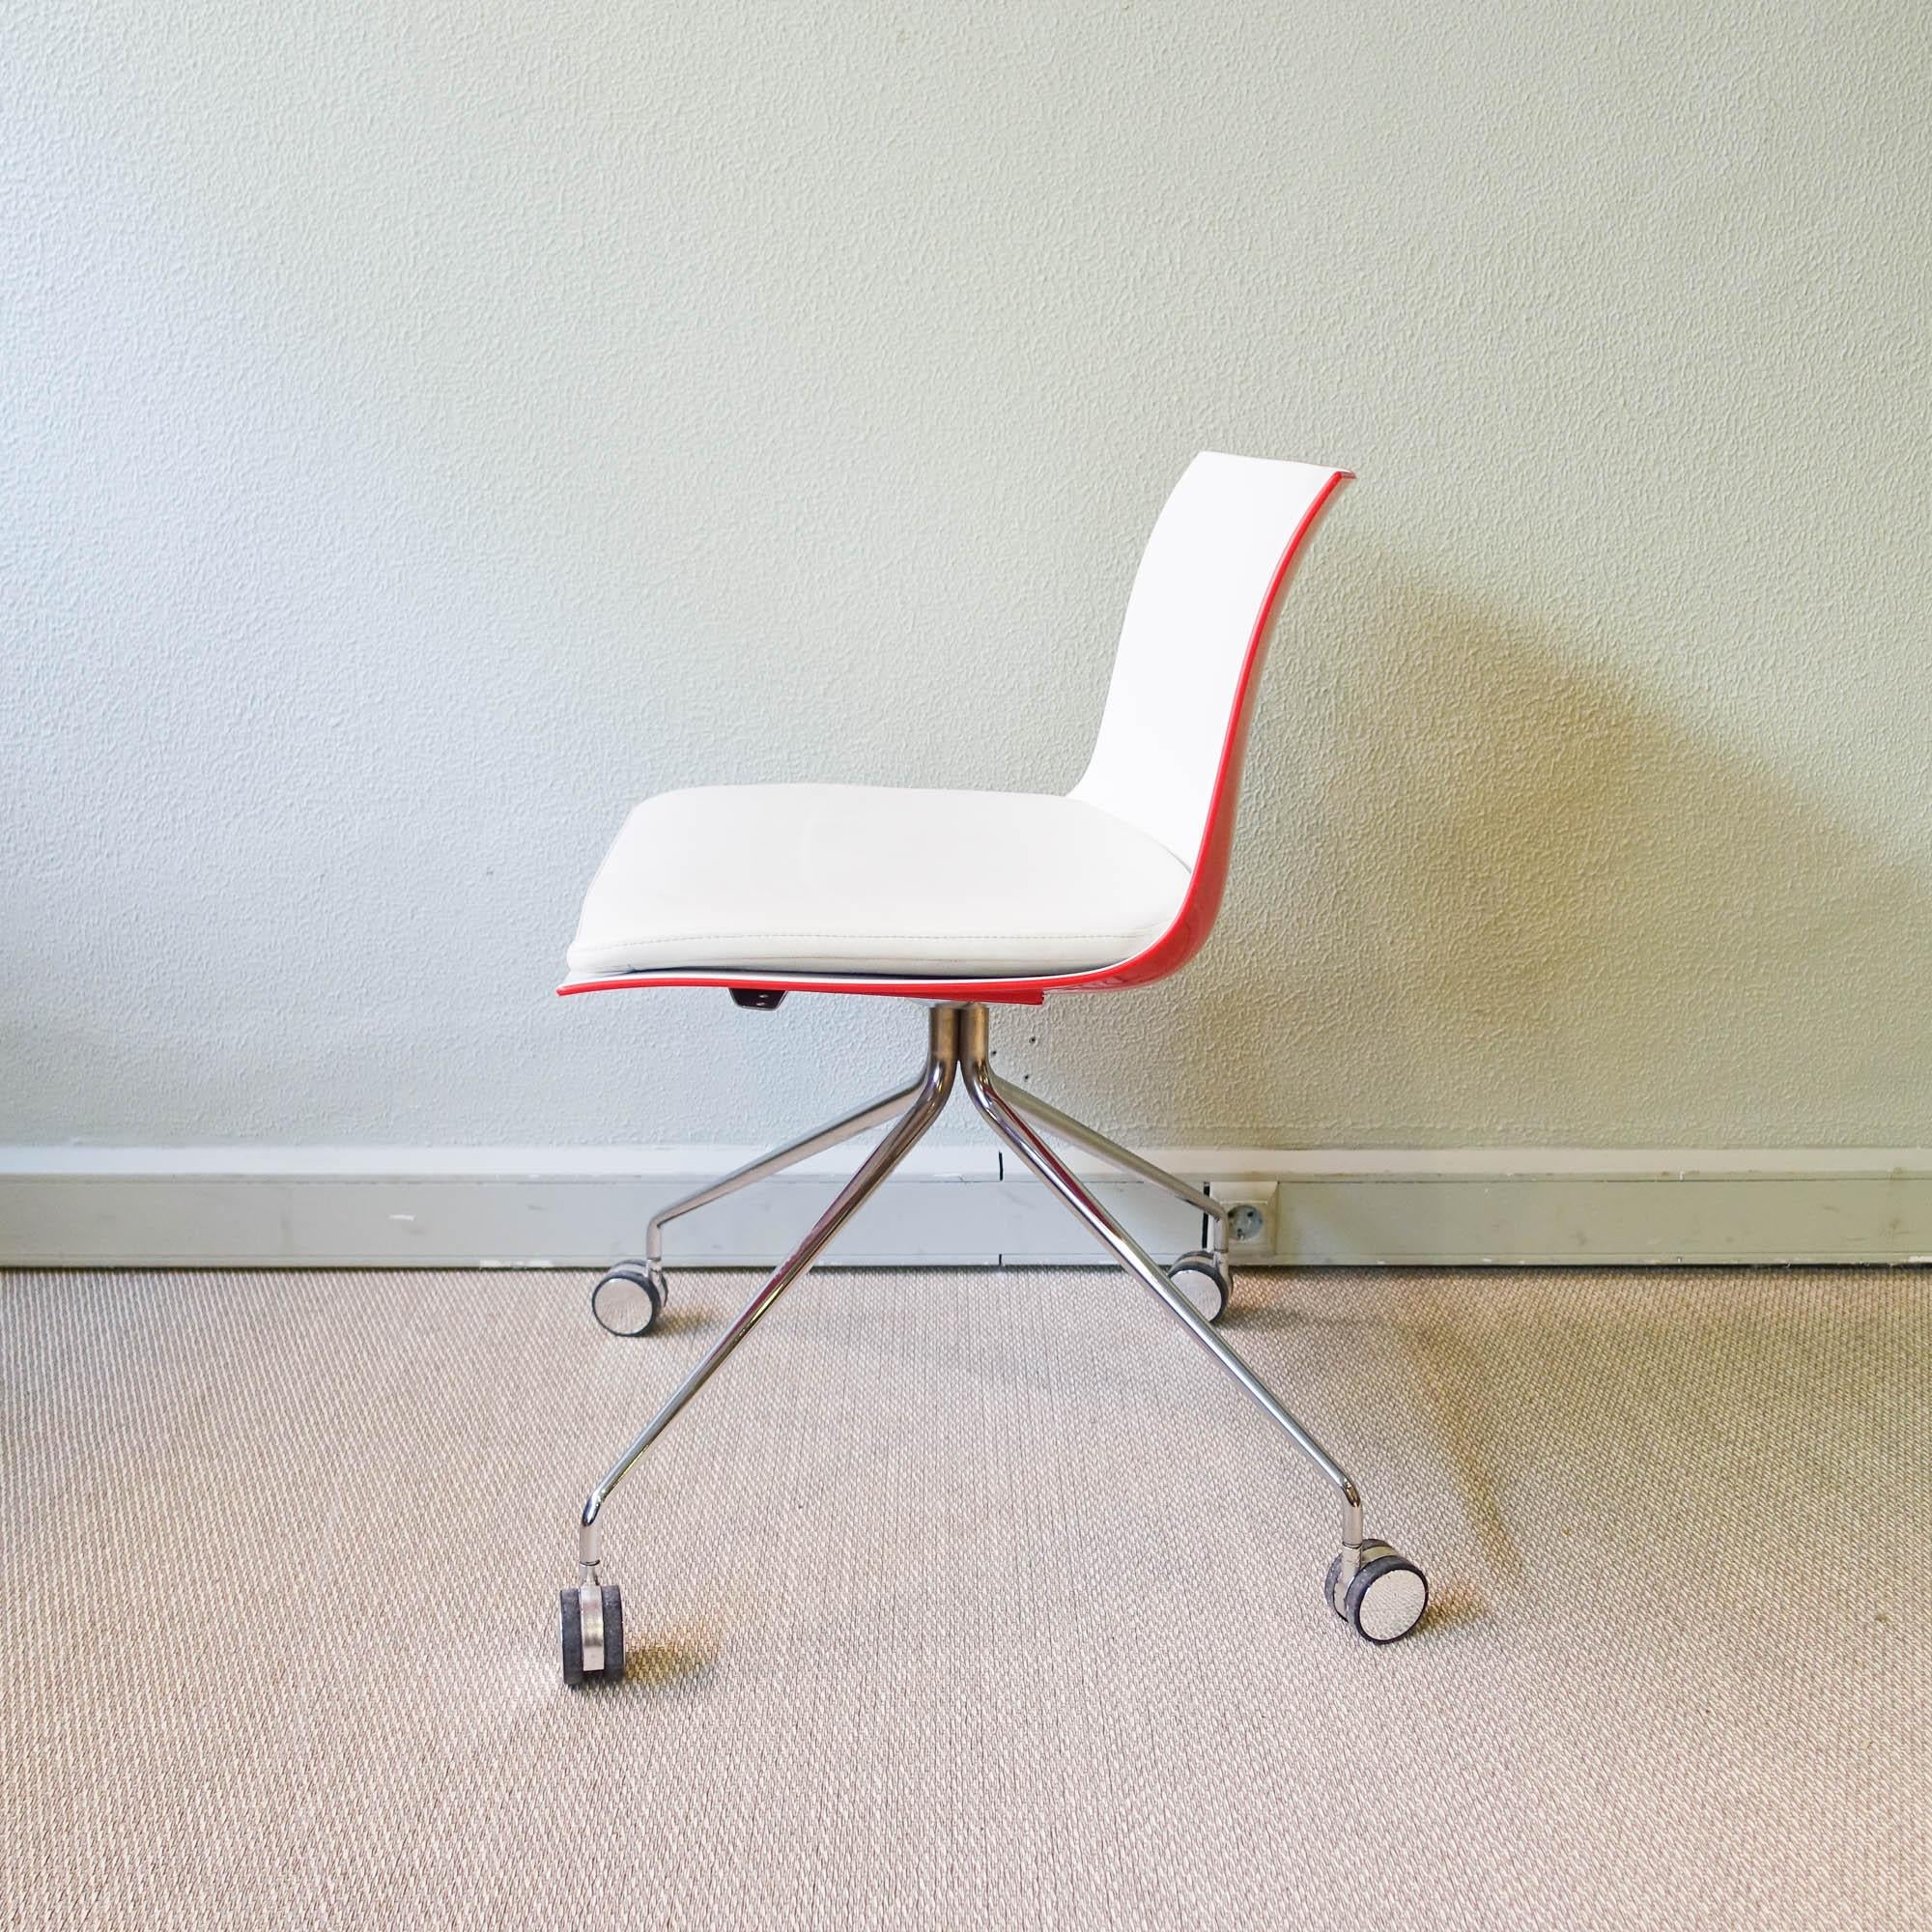 Cette chaise, modèle Catifa, a été conçue par Lievore Altherr Molina, pour  Arper, en Italie, en 2004.  Il est doté d'une coque bicolore en polypropylène, rouge à l'extérieur et blanc à l'intérieur, qui repose sur quatre pieds munis de roulettes en